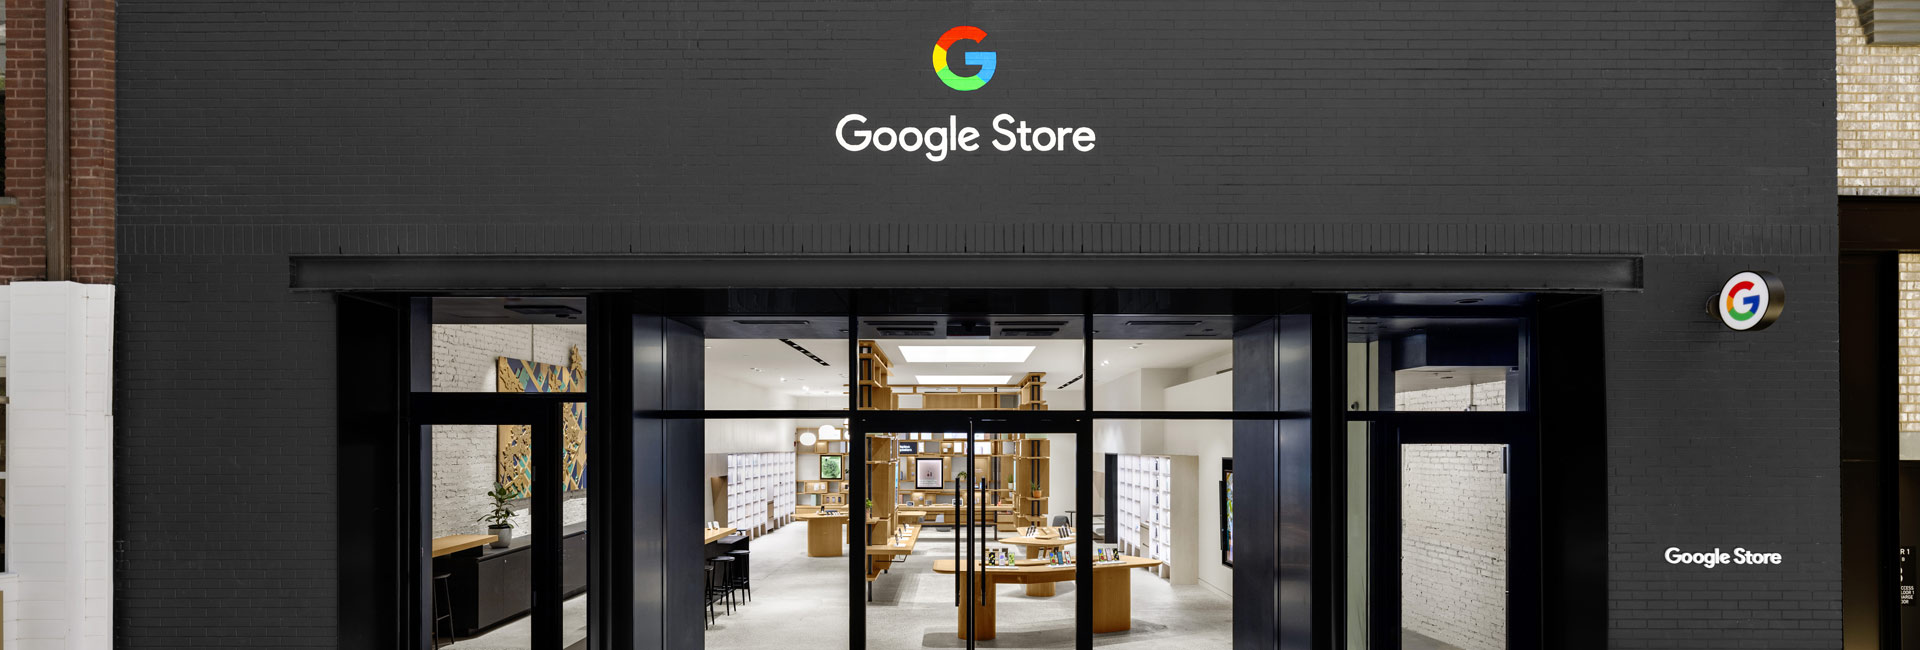 Google Store Brooklyn NY Exterior